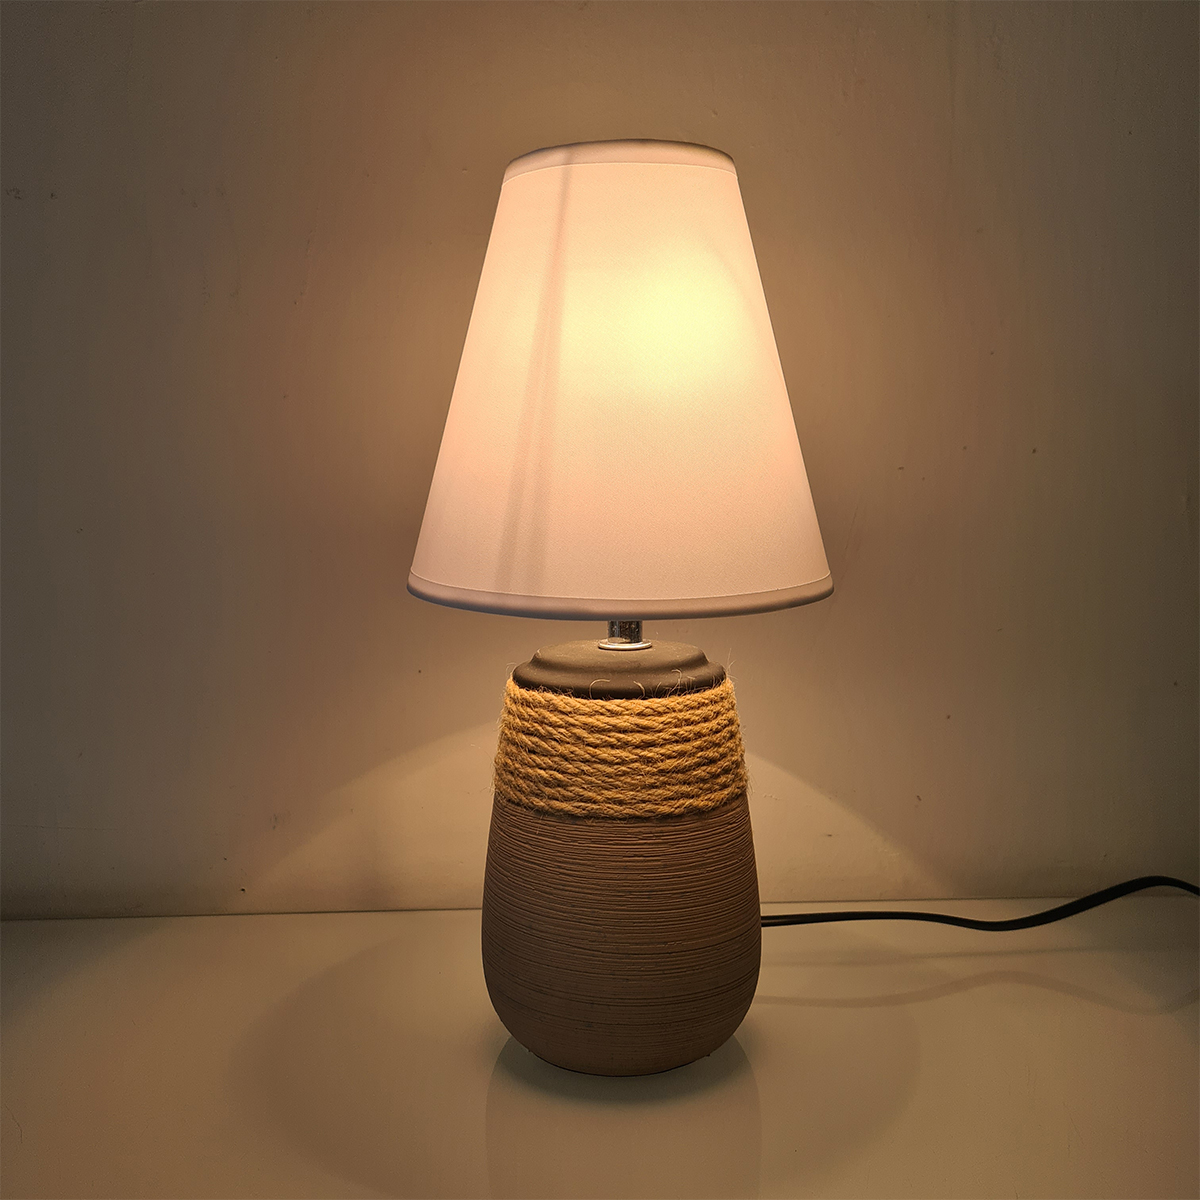 Ceramic lamp and rope 31 cm